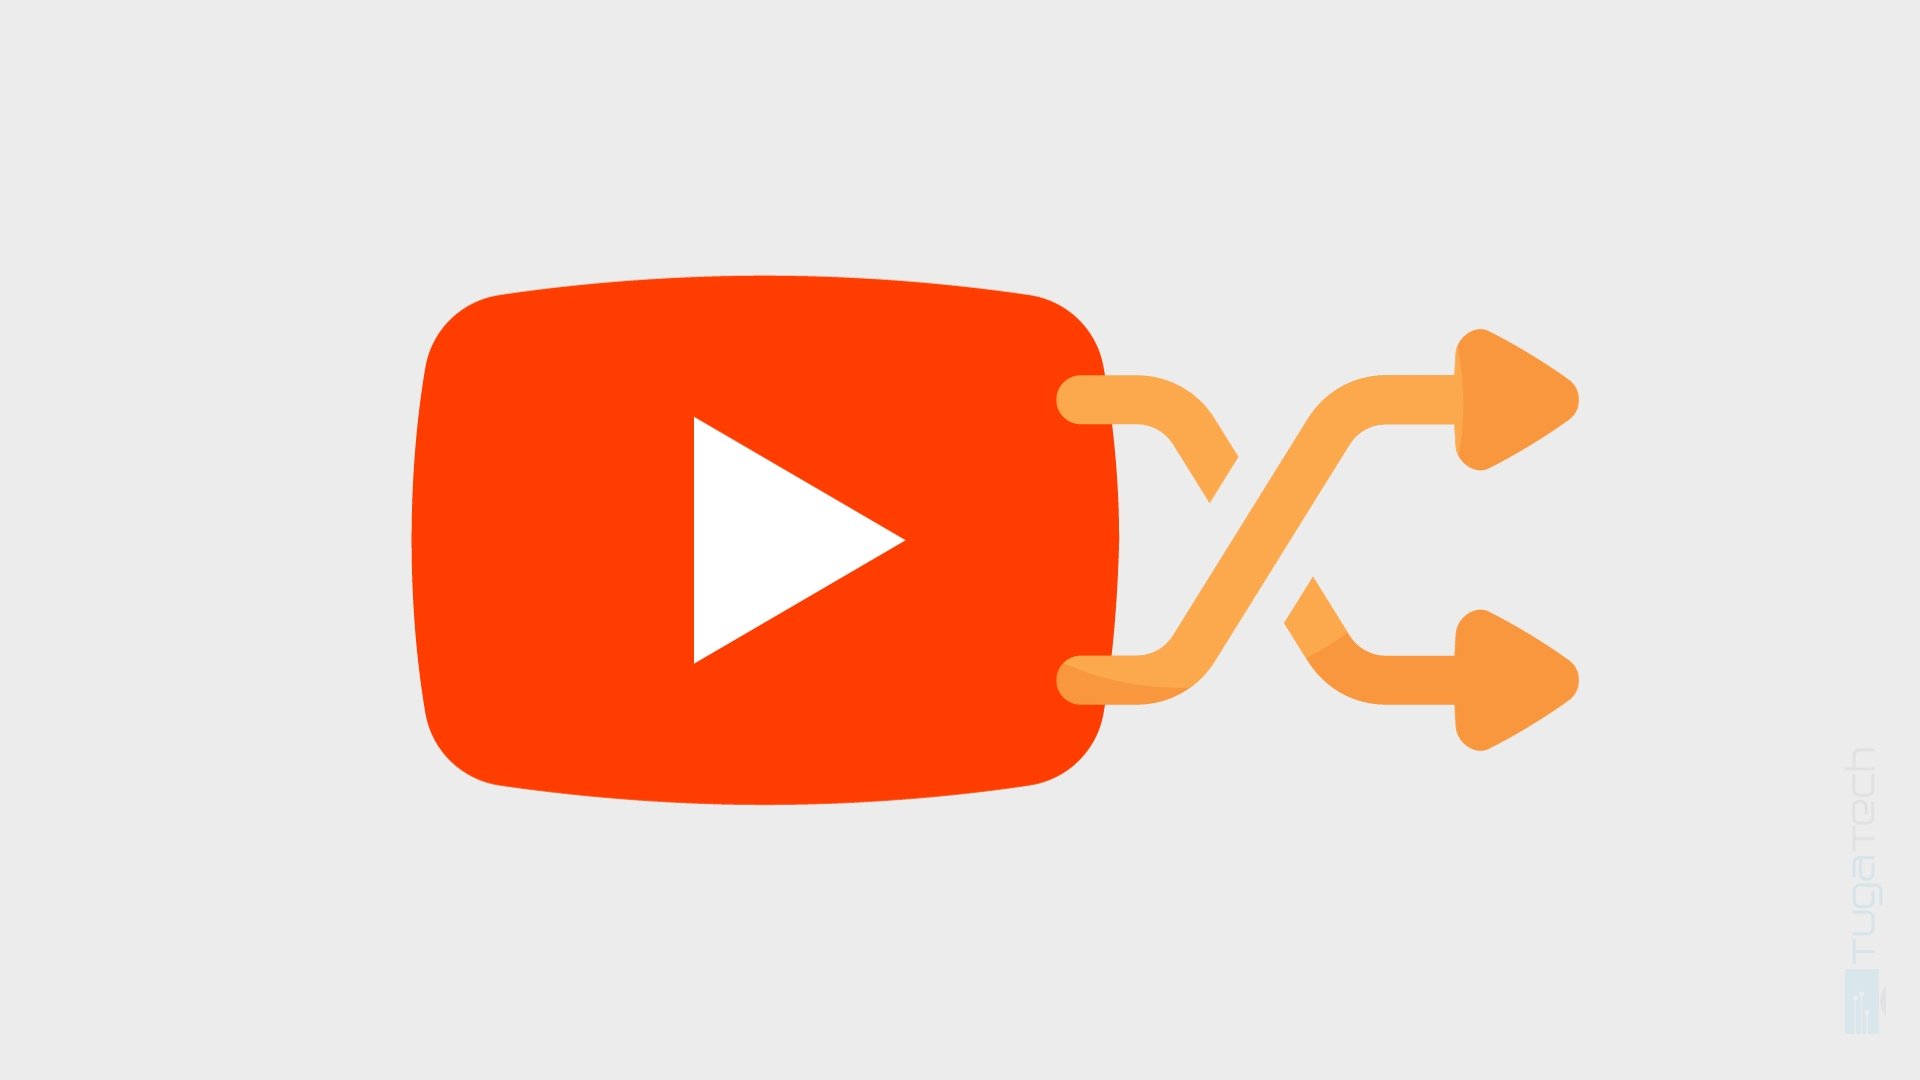 Logo do Youtube com opção shuffle